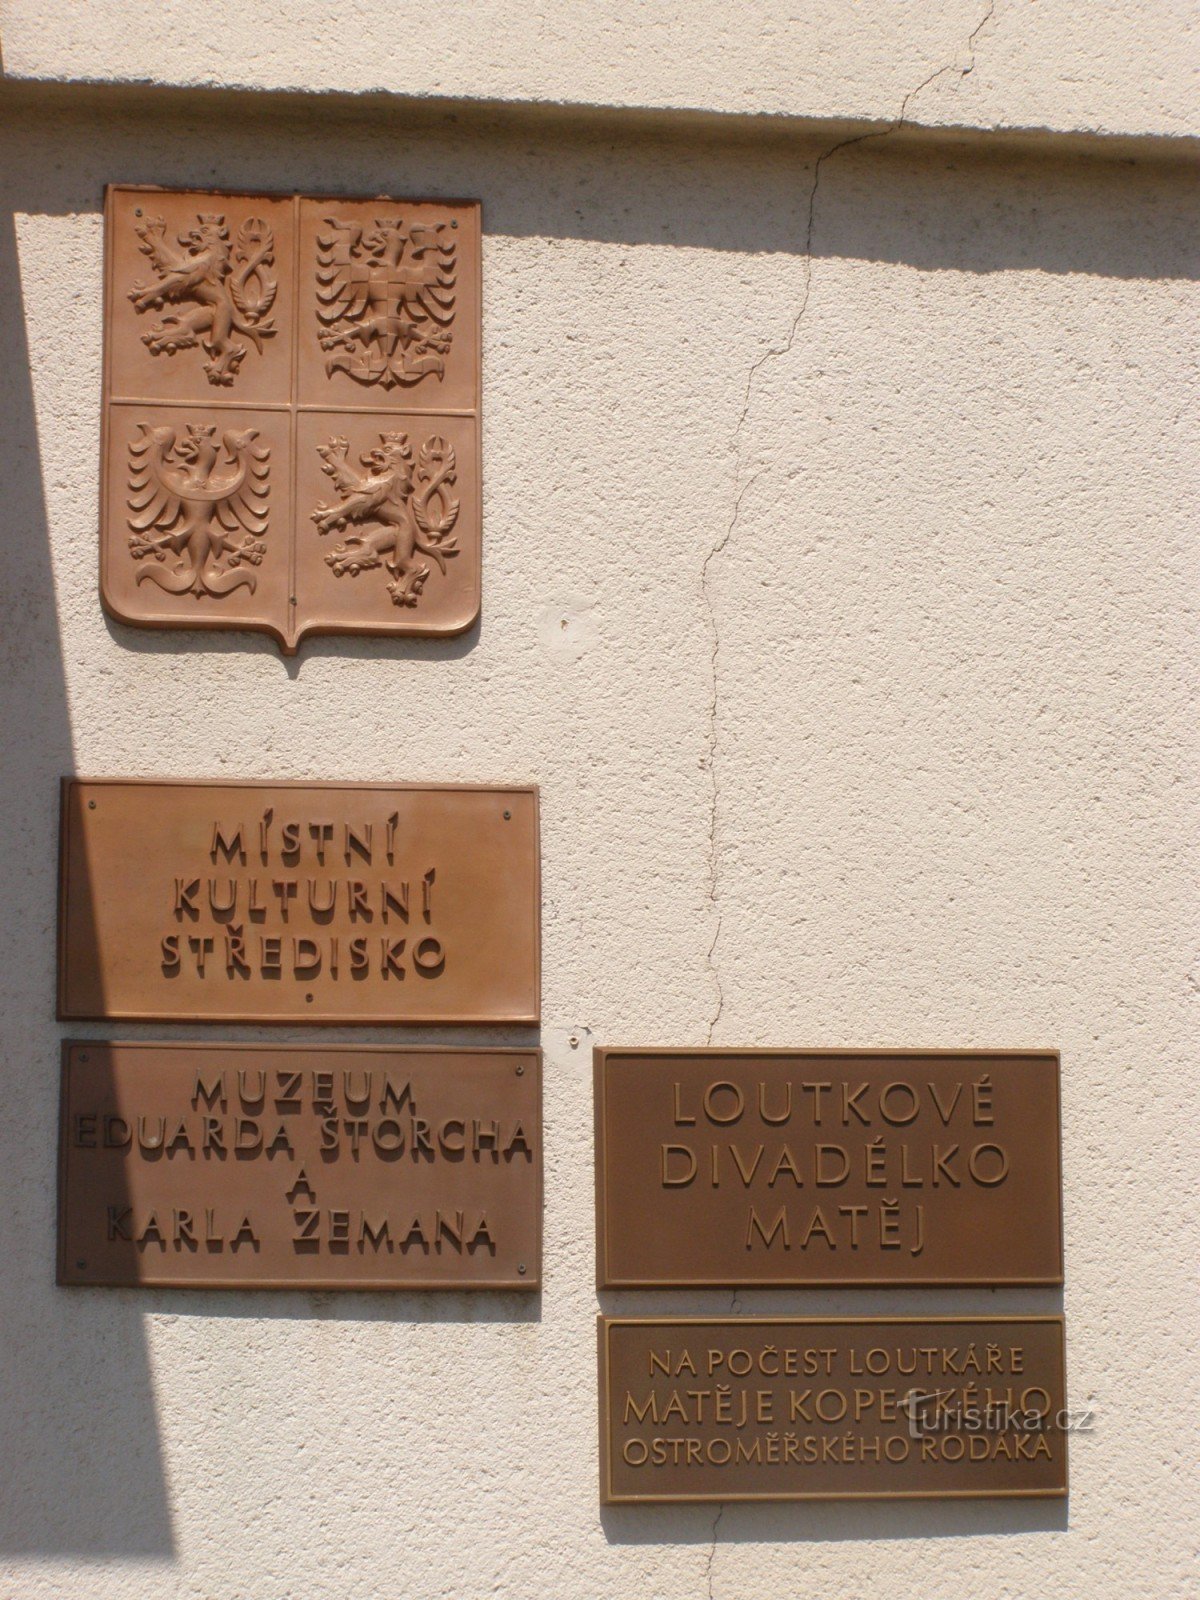 Ostroměř - museu de Eduard Štorch e Karel Zeman